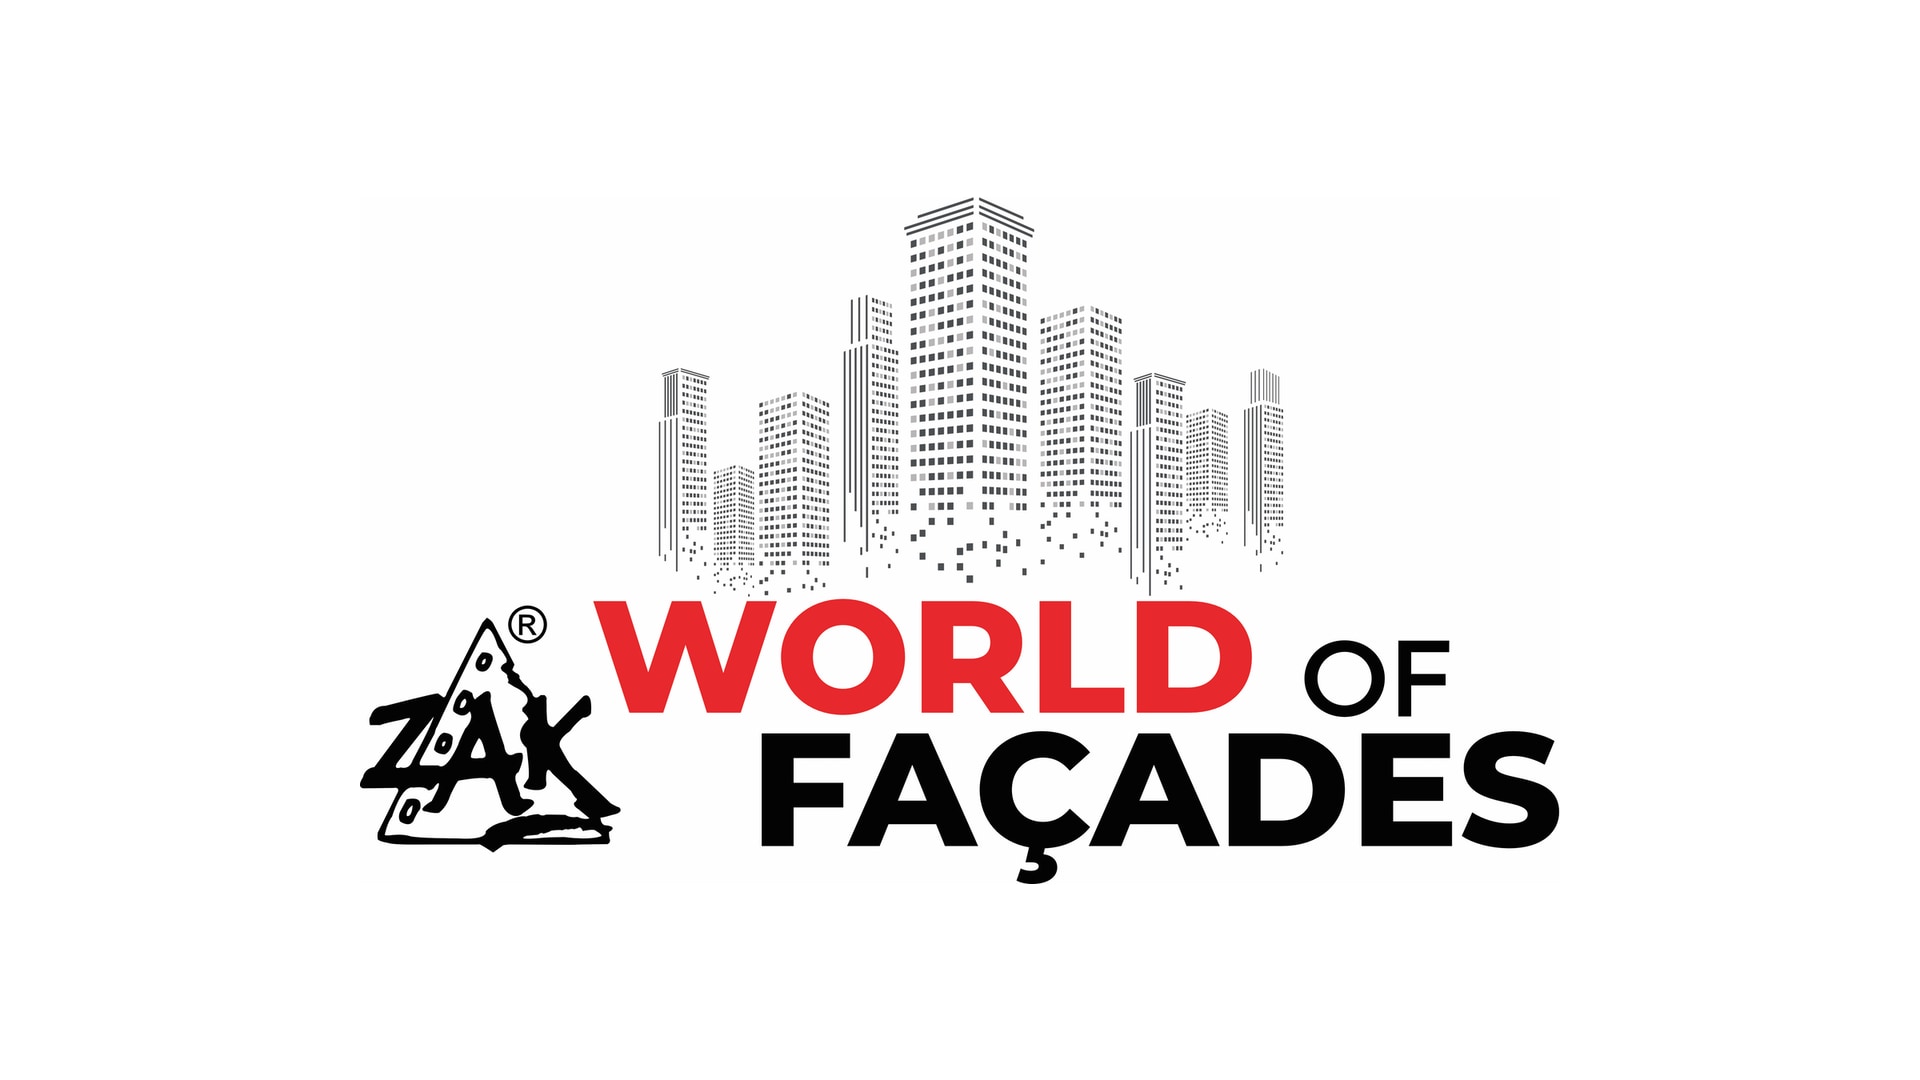 ZAK World of facades